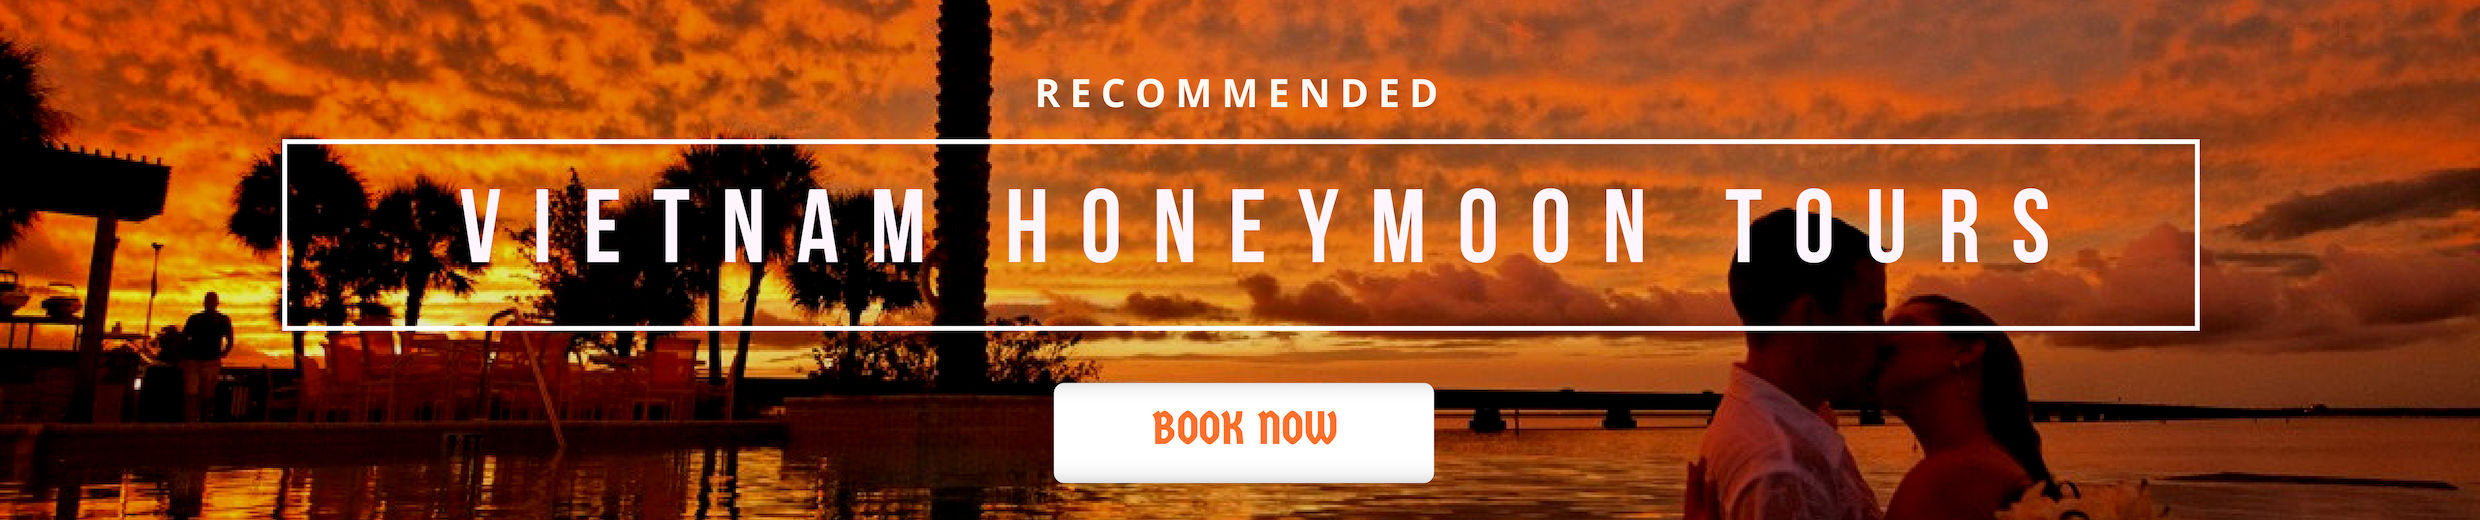 Vietnam Honeymoon Tours